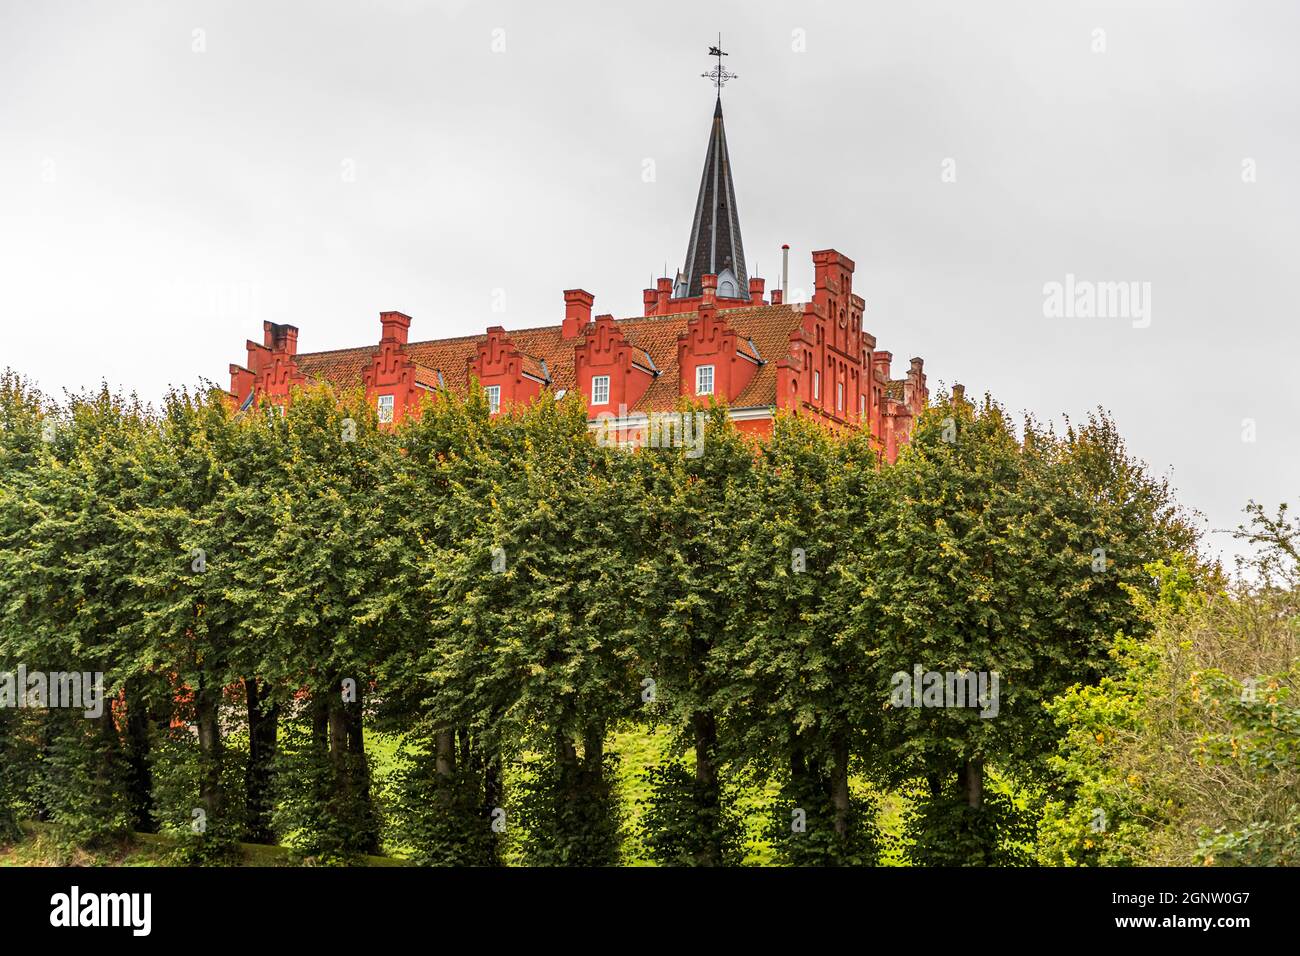 Il castello di Tranekær è rosso acceso nel parco. Il castello esiste su questo sito dal 13 ° secolo ed è stato utilizzato come residenza ufficiale dai funzionari del re danese sull'isola di Langeland, Danimarca Foto Stock